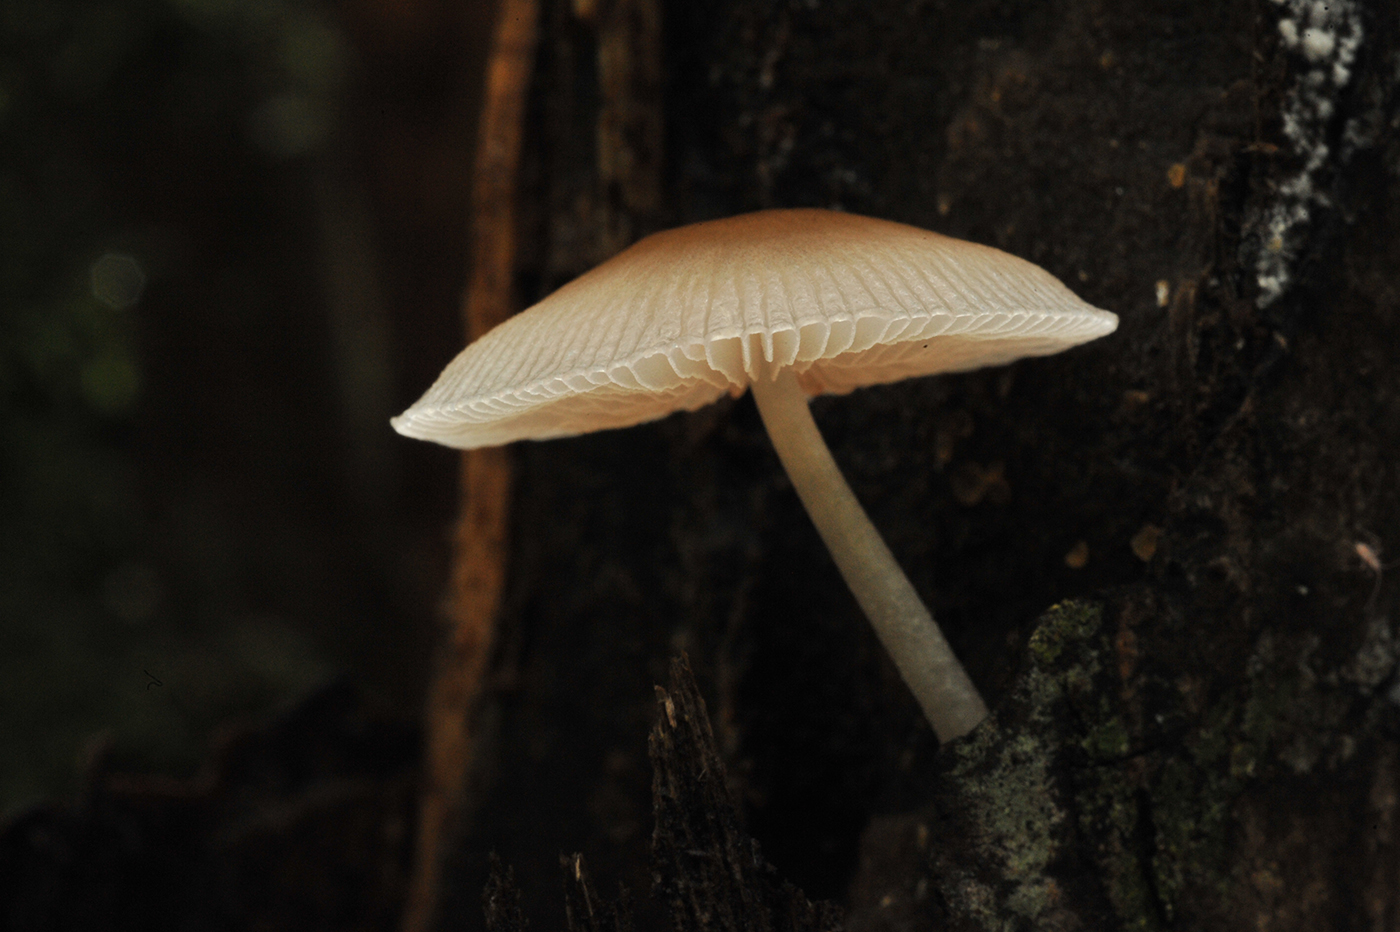 Fungi_queensland_2848_1400